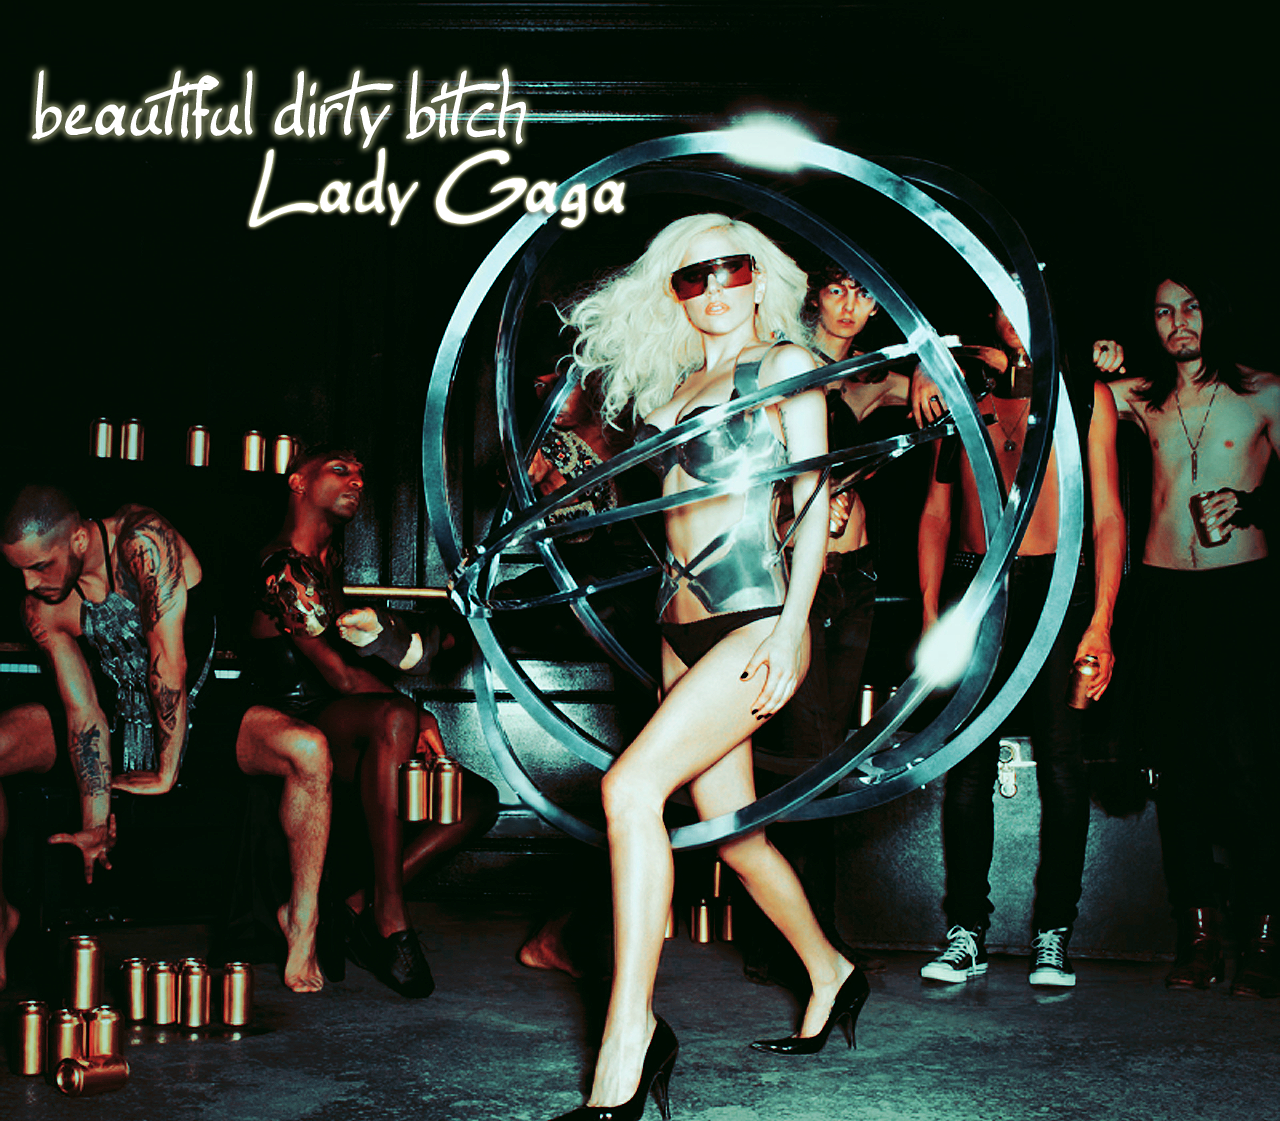 http://4.bp.blogspot.com/-51LjOK9dVBk/TncwLqzsWMI/AAAAAAAAAVM/DYFq5Jh9hU4/s1600/Lady_Gaga_Wallpaper_sexylove.png